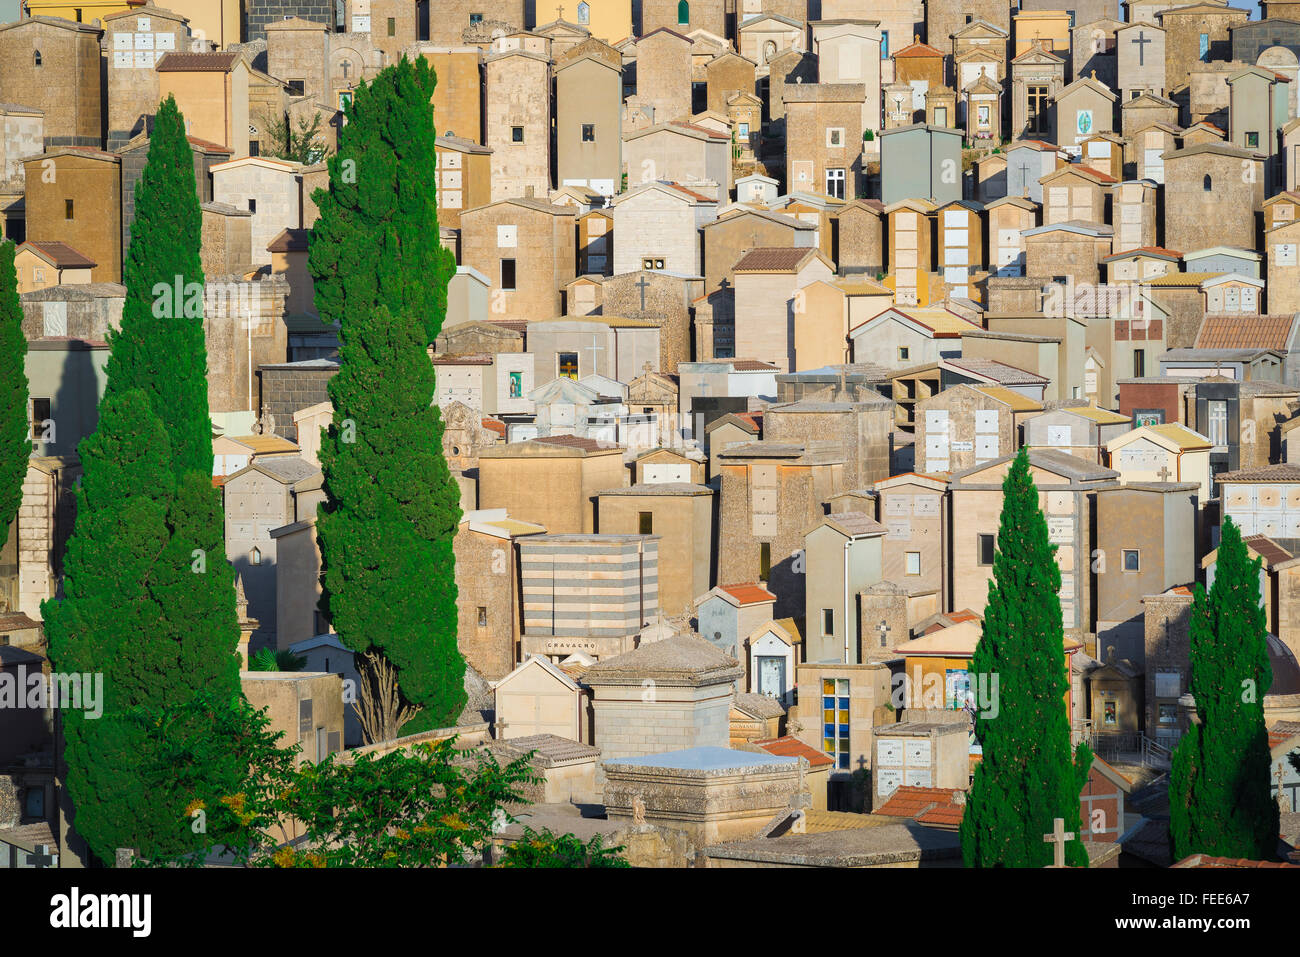 Cimitero pieno, vista di un affollato il cimitero di collina nella periferia di Enna nella Sicilia centrale. Foto Stock